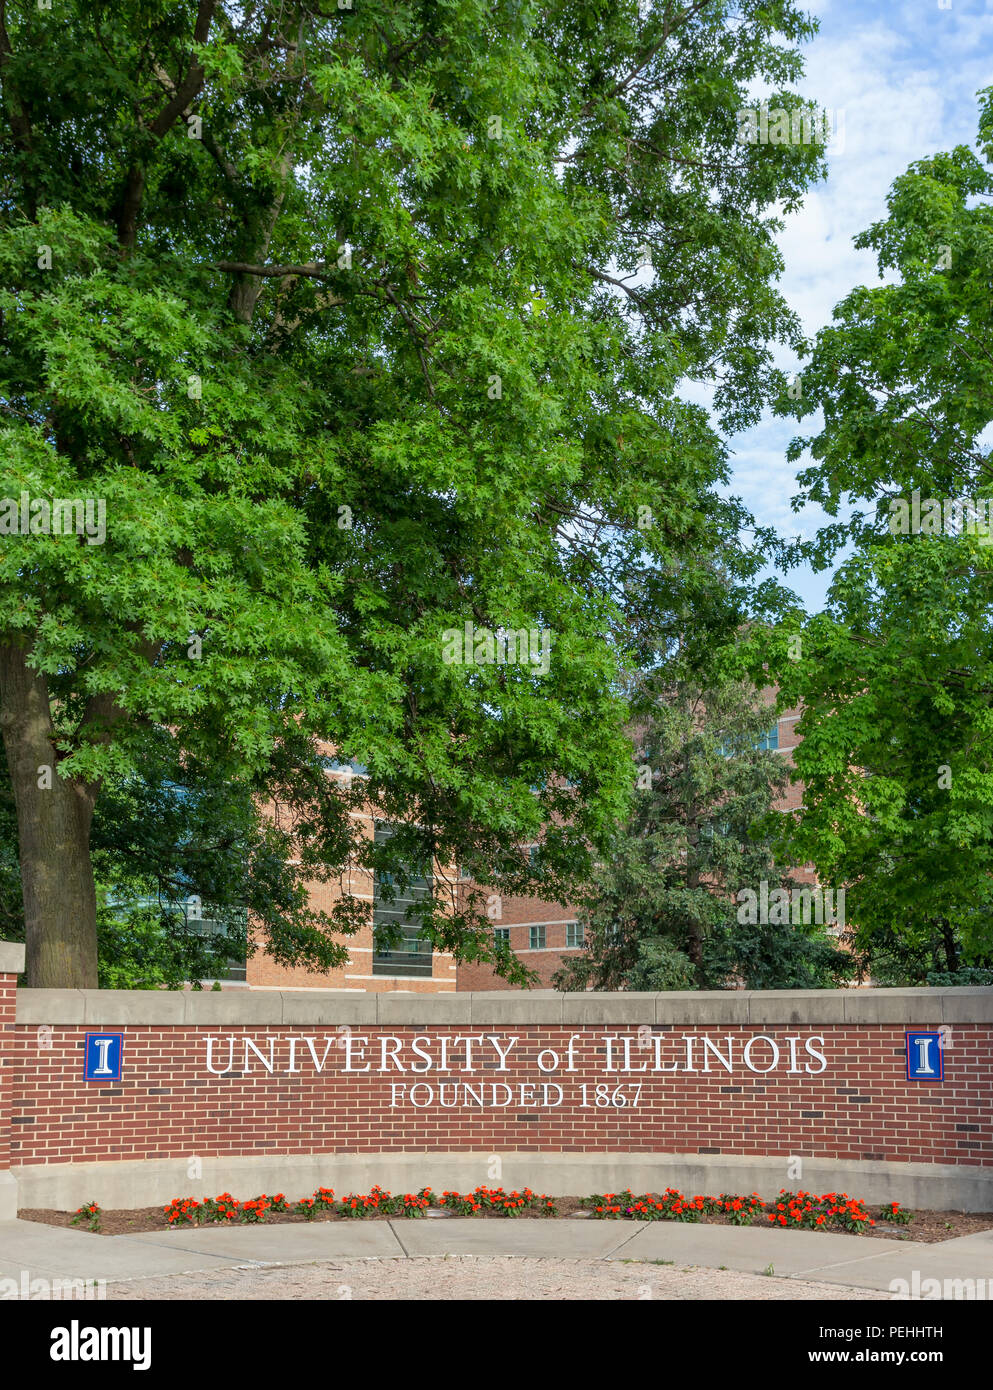 URBANA, IL/USA, 2. Juni 2018. Eingangsschild an der Universität von Illinois in Urbana-Champaign, eine öffentliche Forschungseinrichtung Universität im US-Bundesstaat Illi Stockfoto